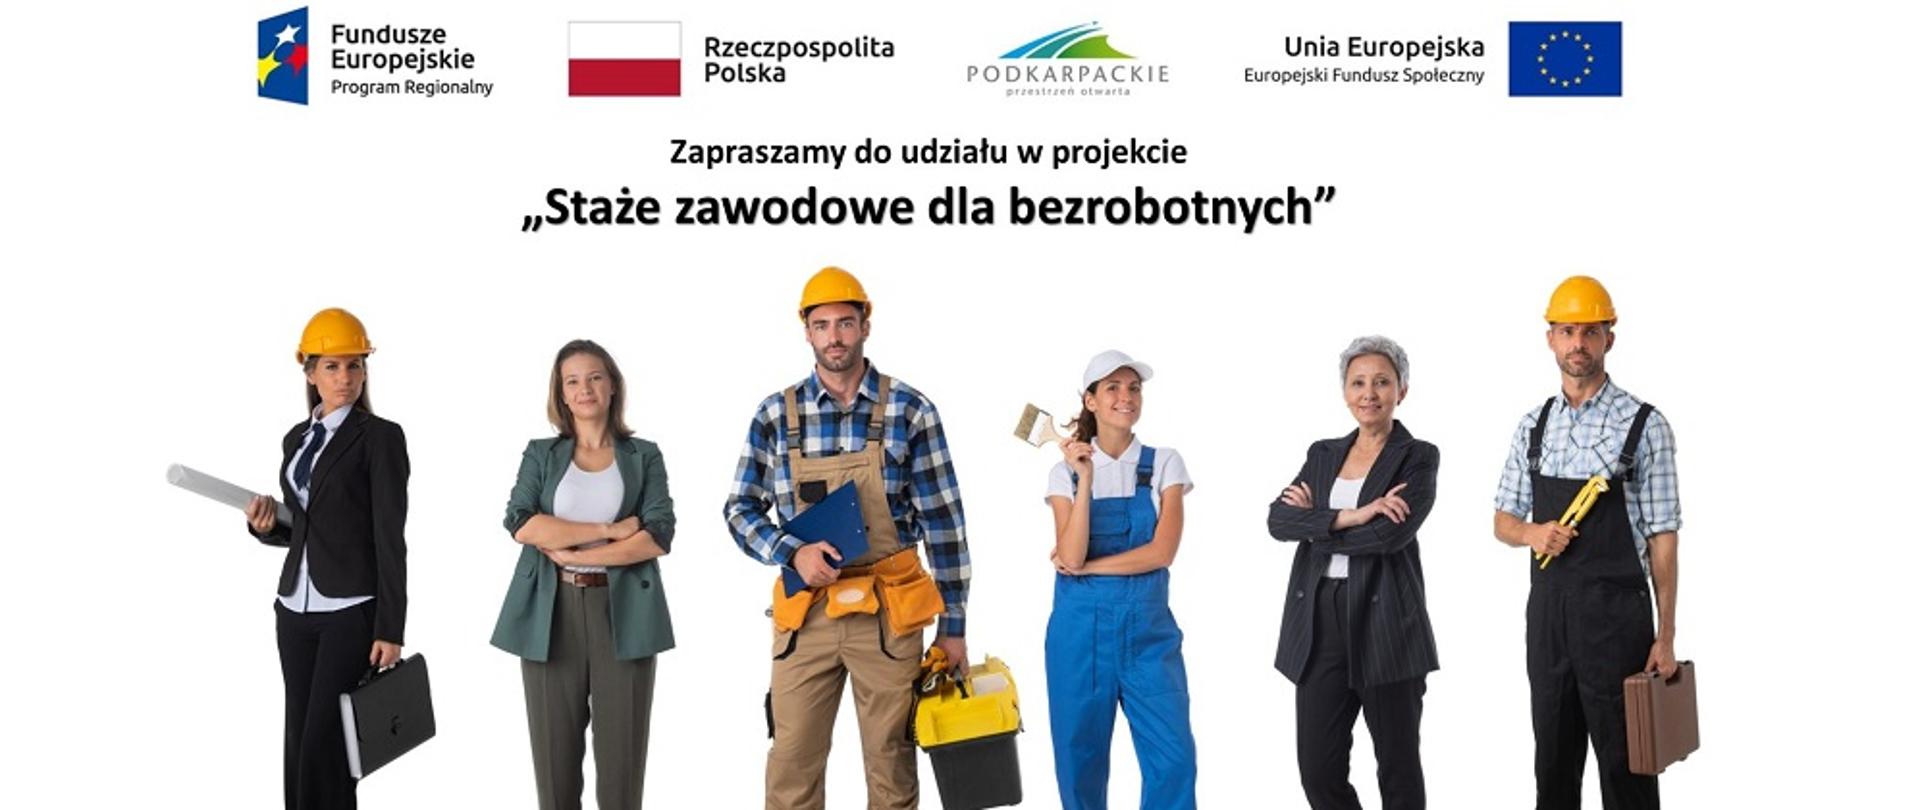 cztery kobiety i dwóch mężczyzn w różnych strojach oraz czarny napis "Zapraszamy do udziału w projekcie "Staże zawodowe dla bezrobotnych" 